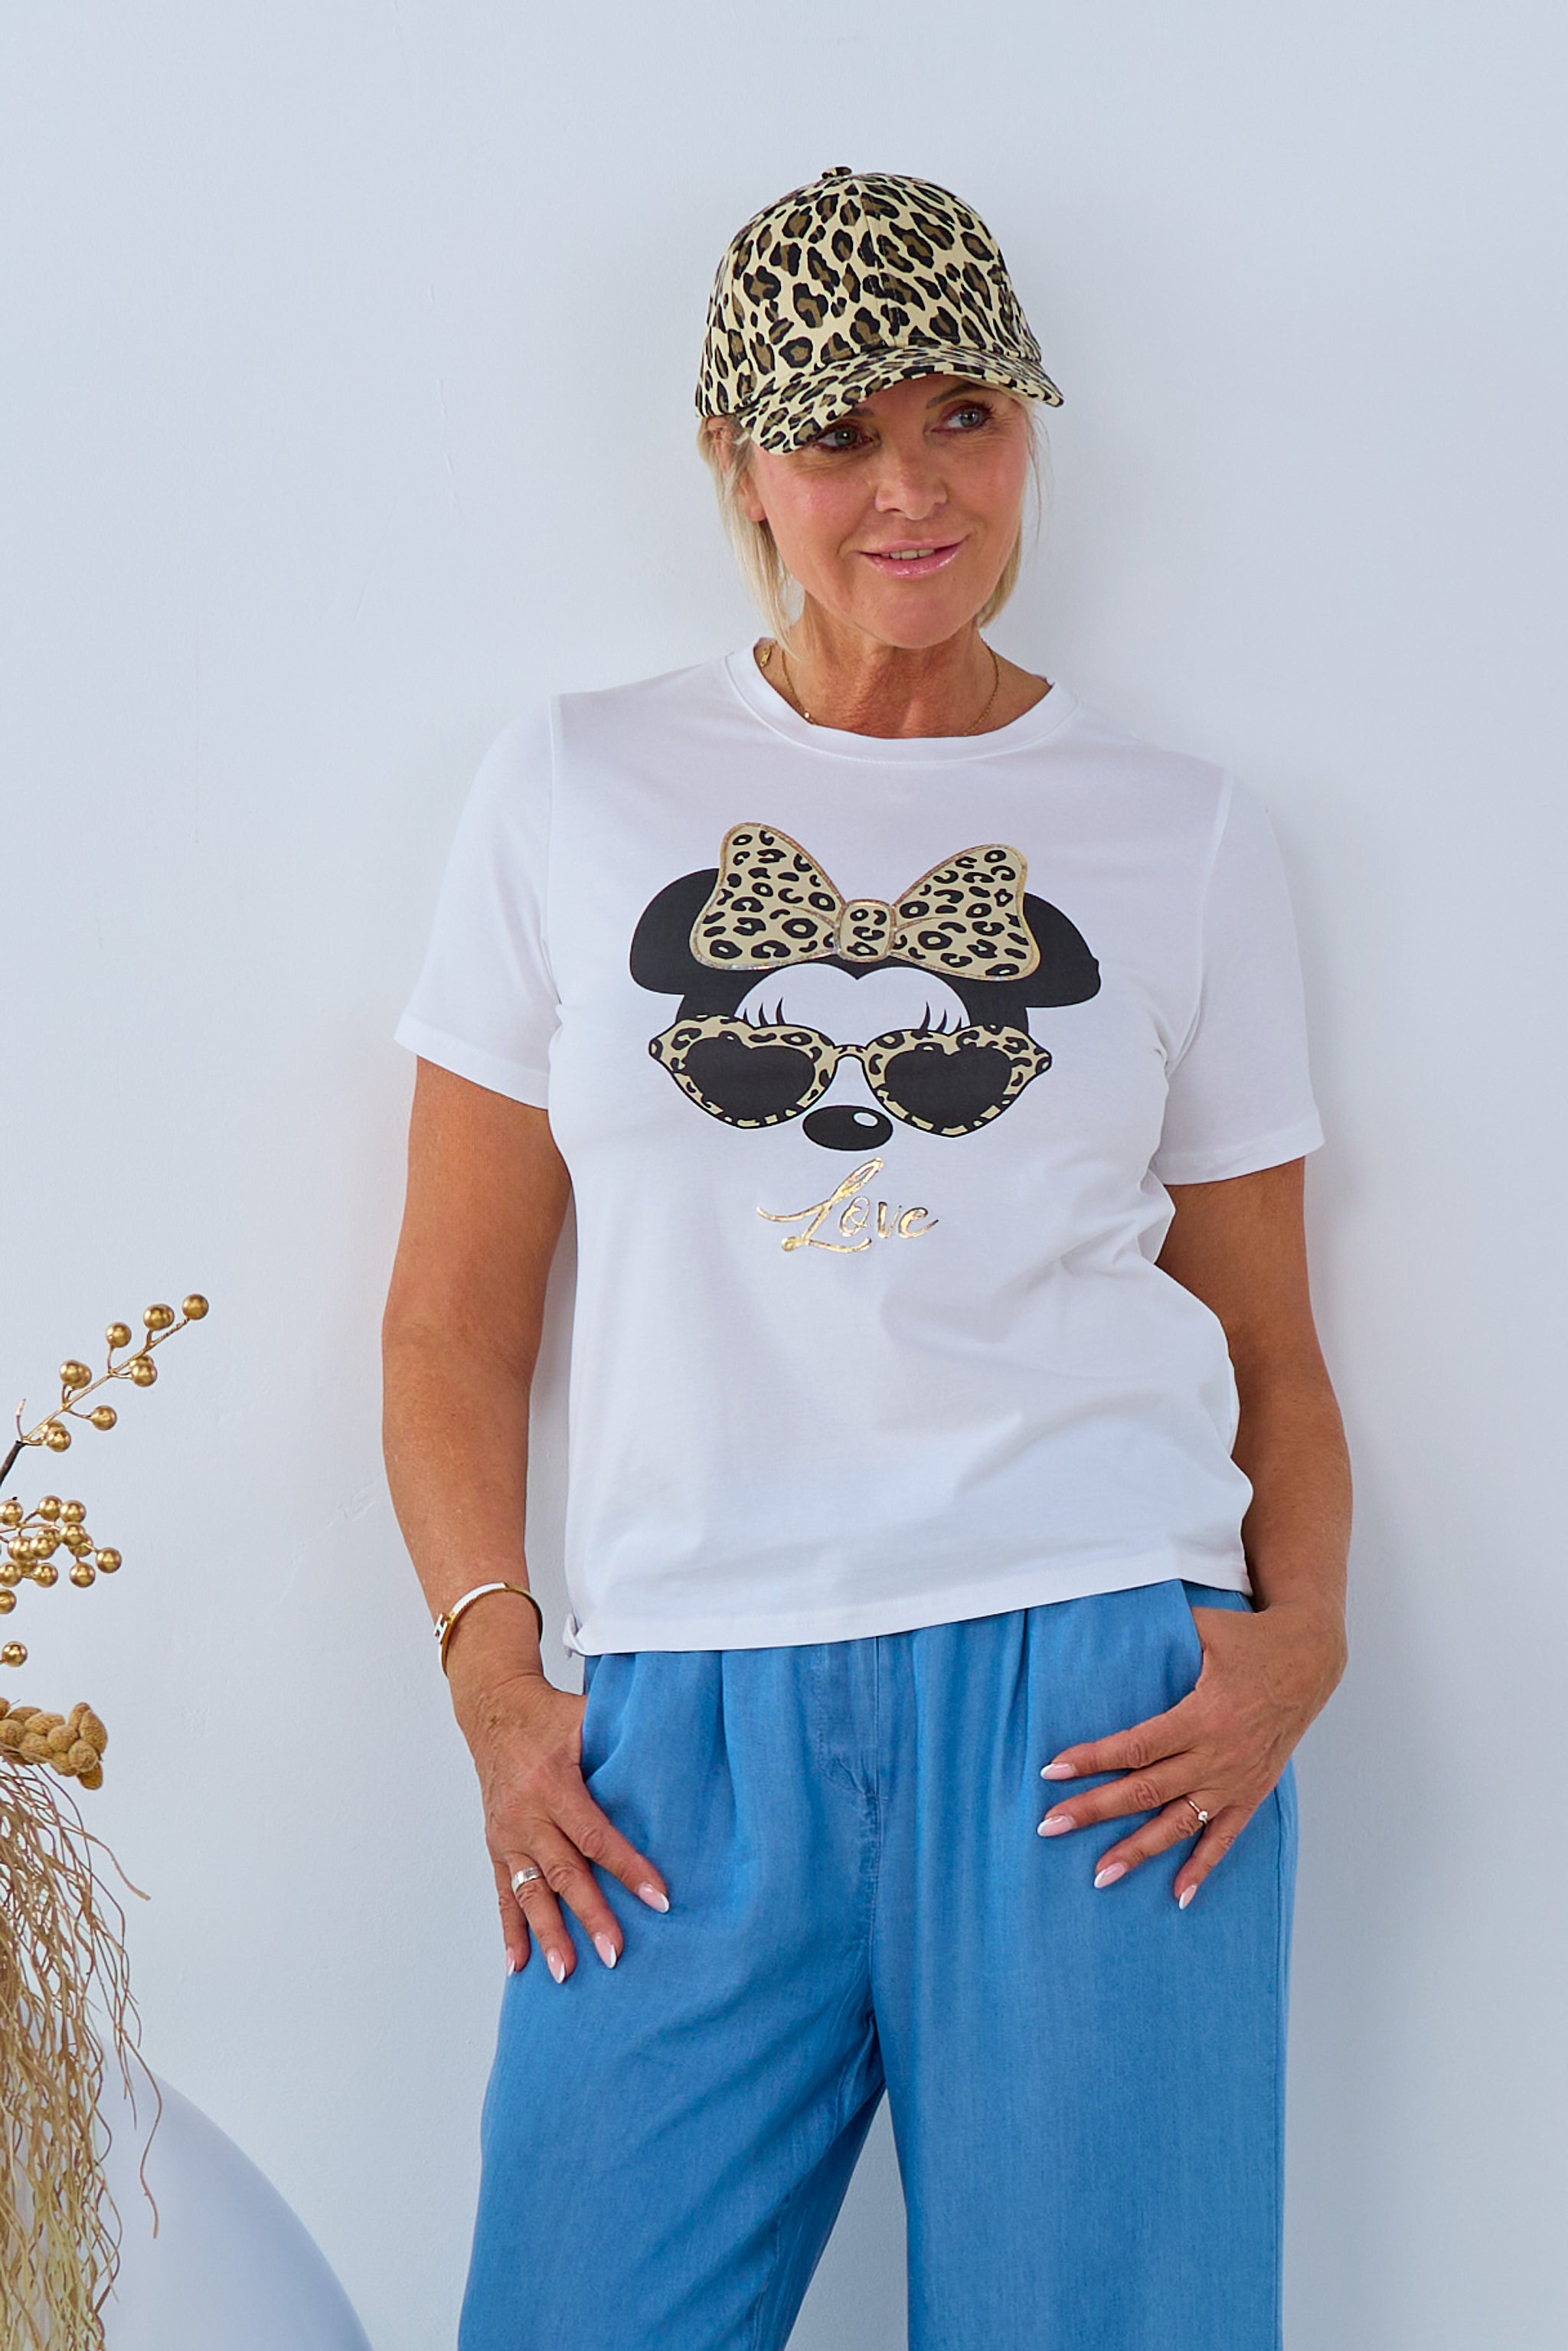 T-Shirt Love mit Leo-Schleife, weiß-taupe-gold von Trends & Lifestyle